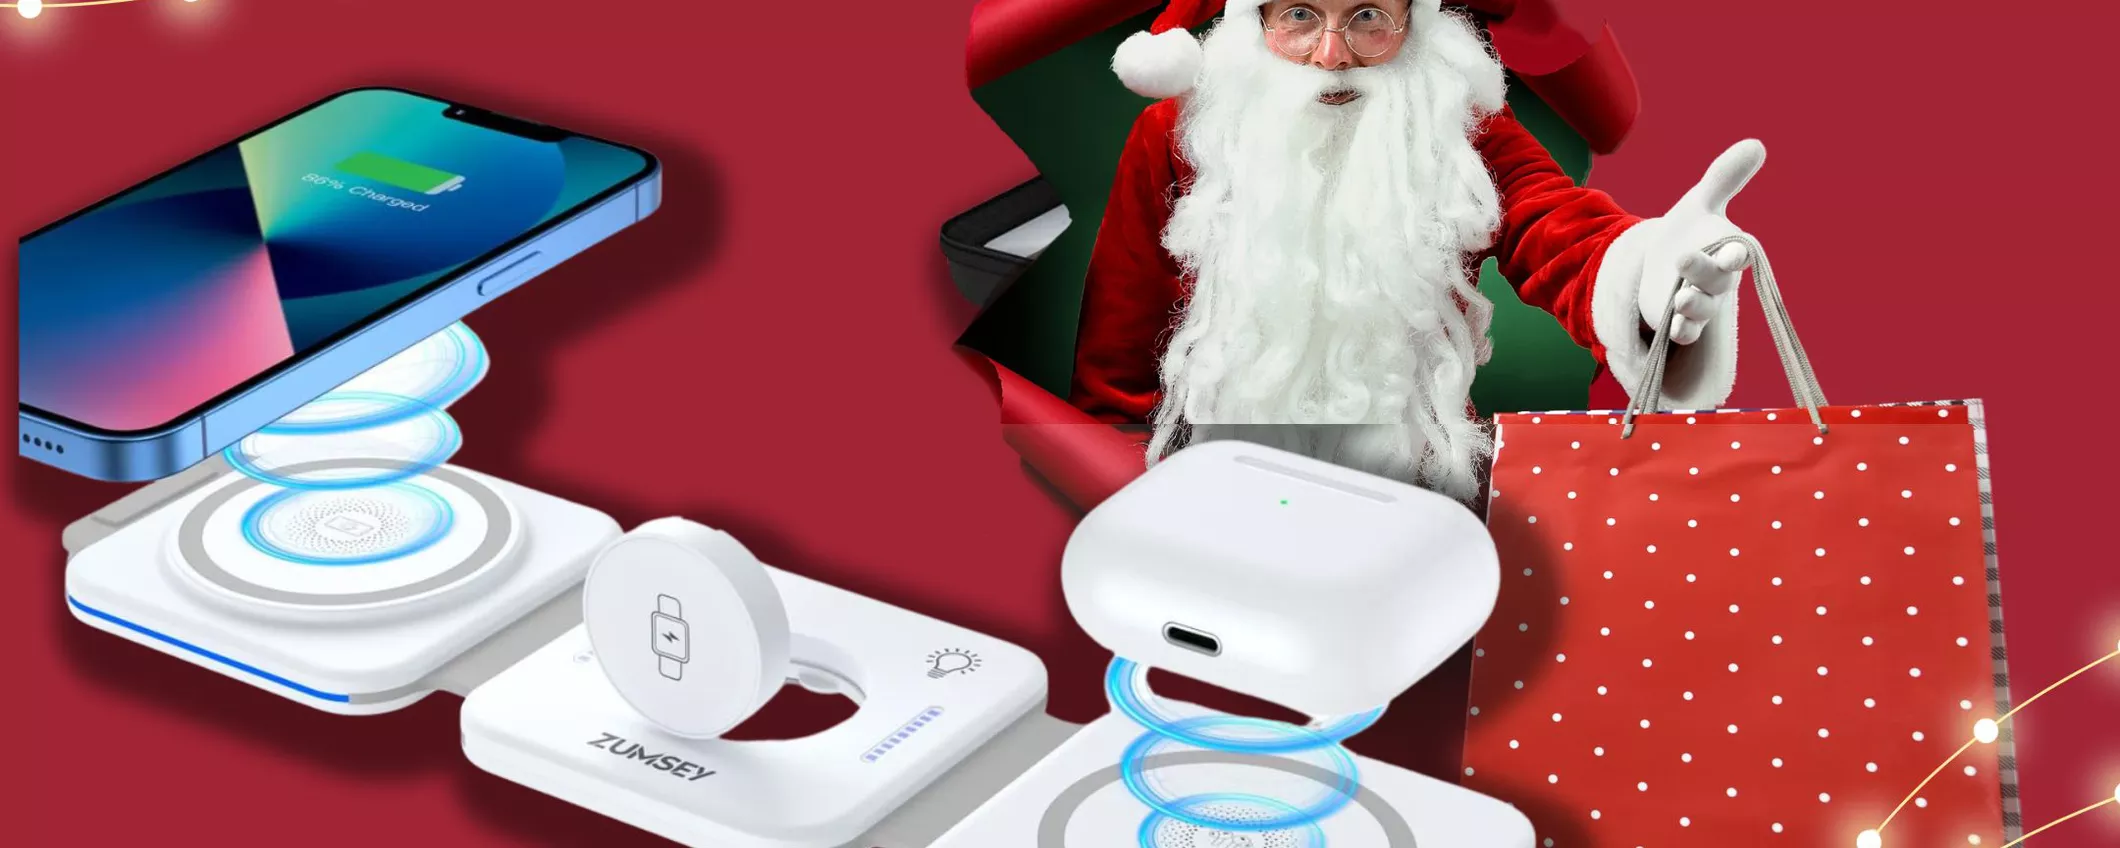 Caricatore PIEGHEVOLE wireless: il perfetto regalo di Natale oggi costa meno che mai!